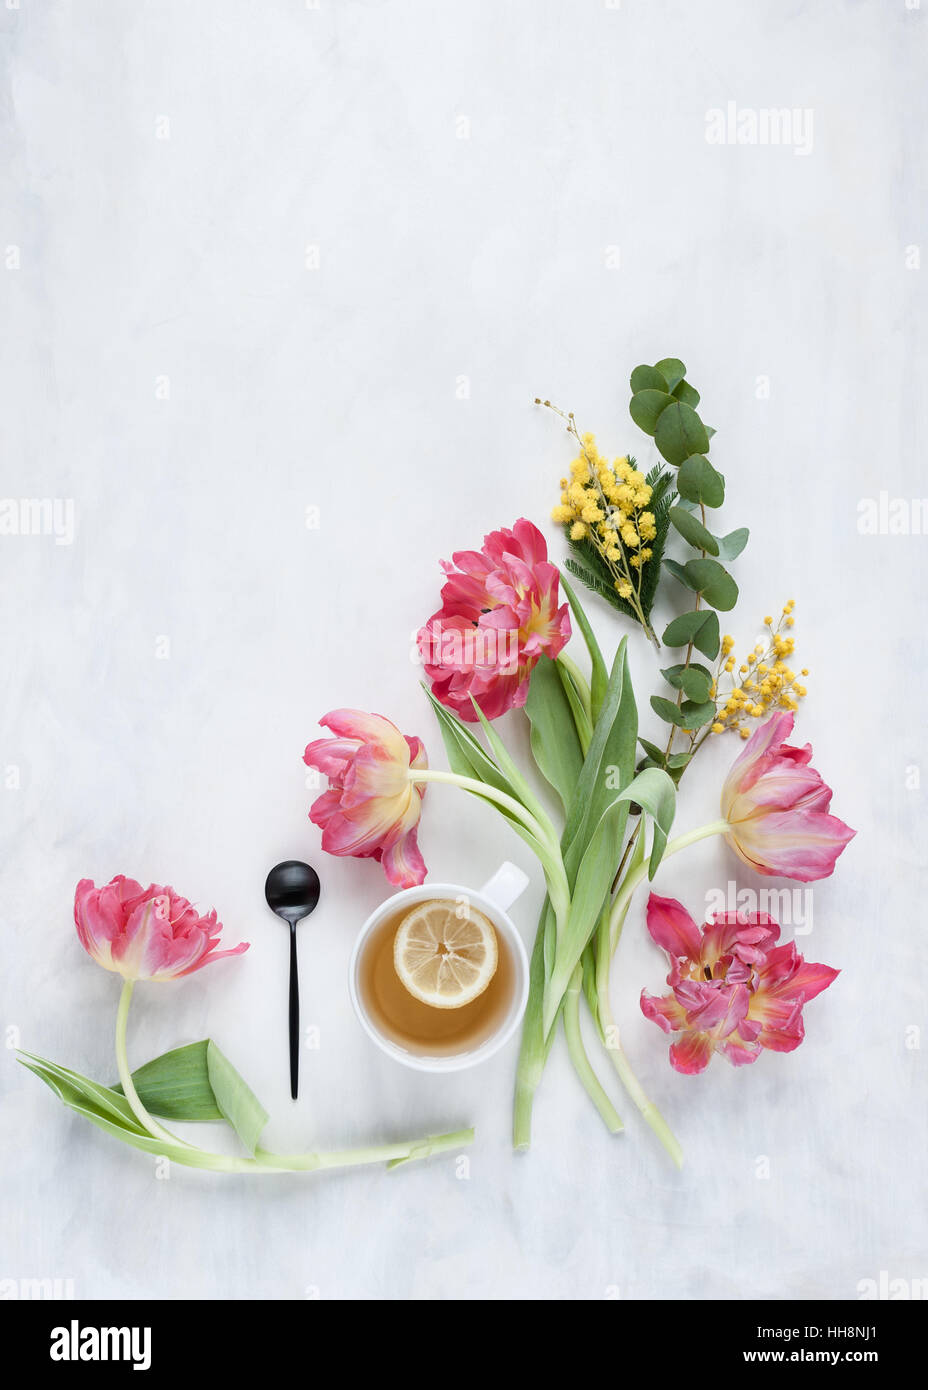 Sentar planas con tulipanes y vaso de agua establecidos en gris y blanco telón pintado con luz natural Foto de stock